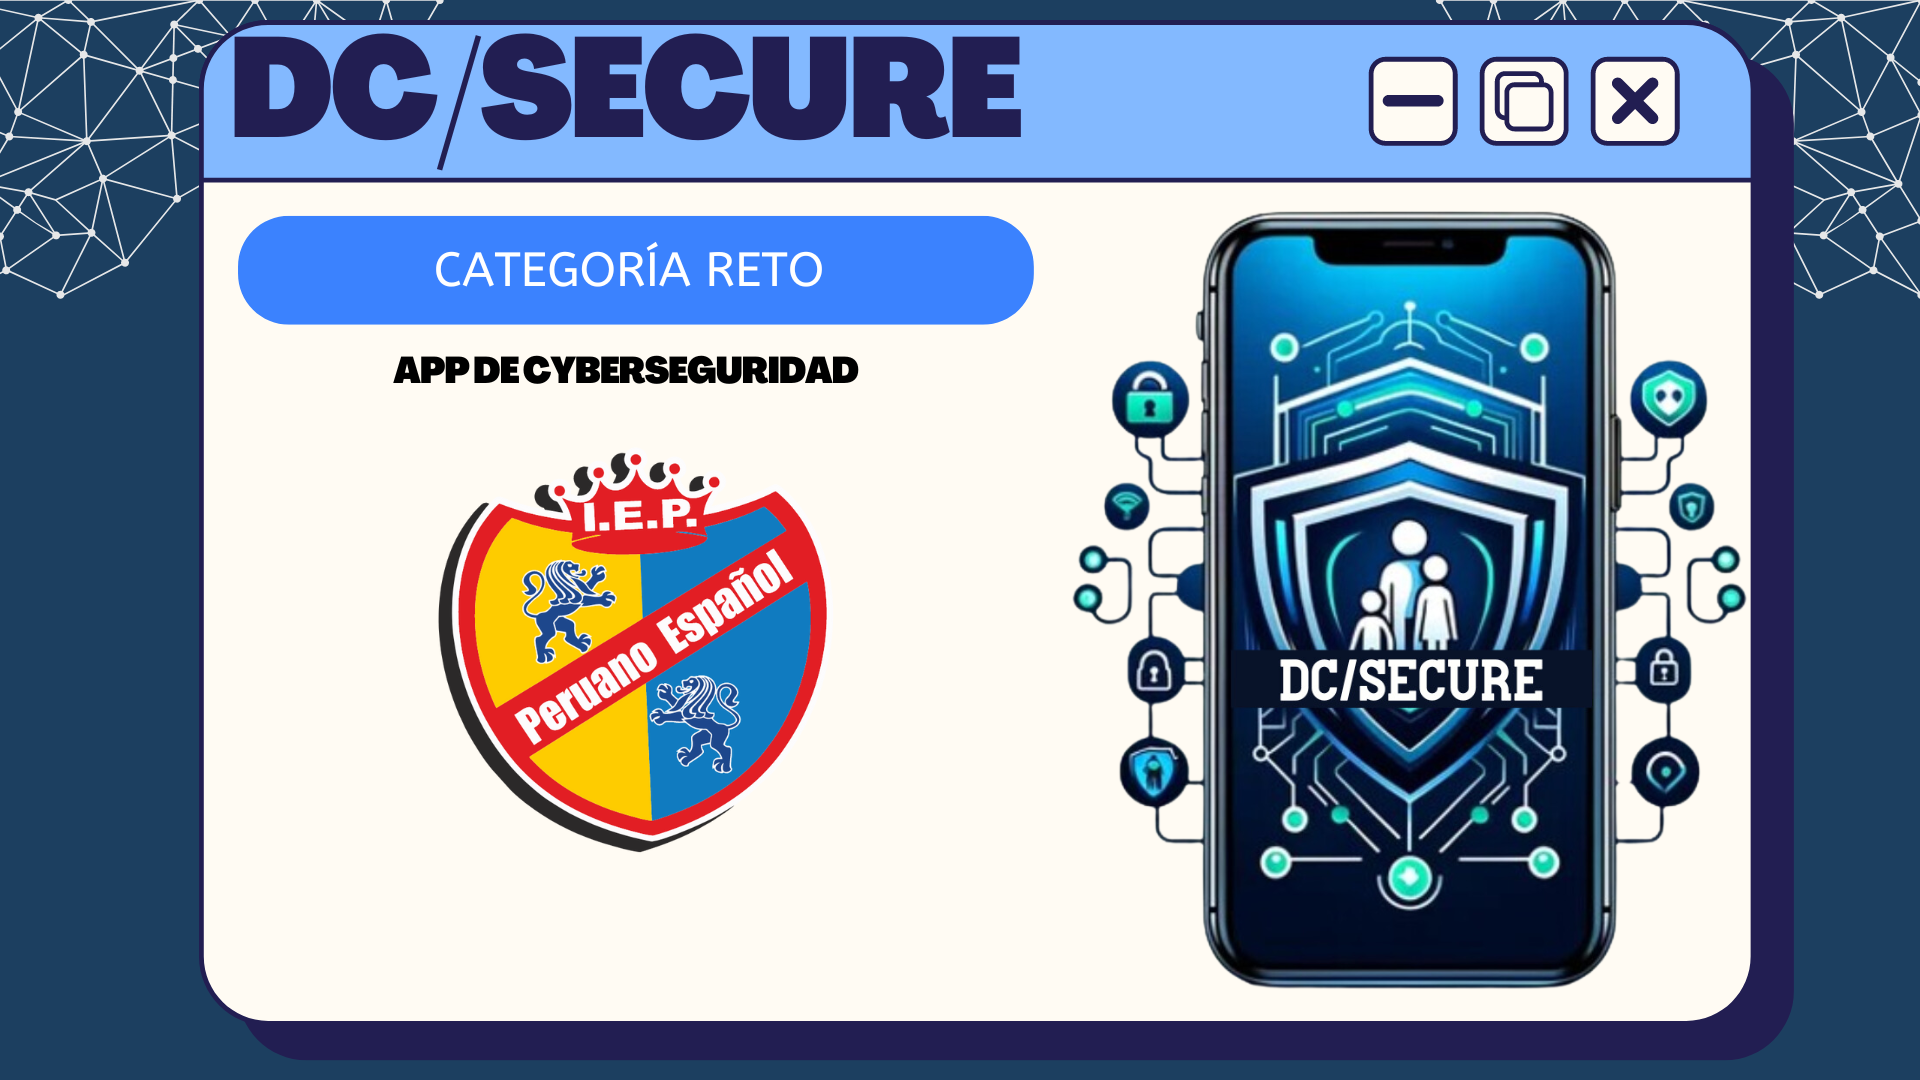 Ver Trabajo presentado App de cyberseguridad: DC/Secure